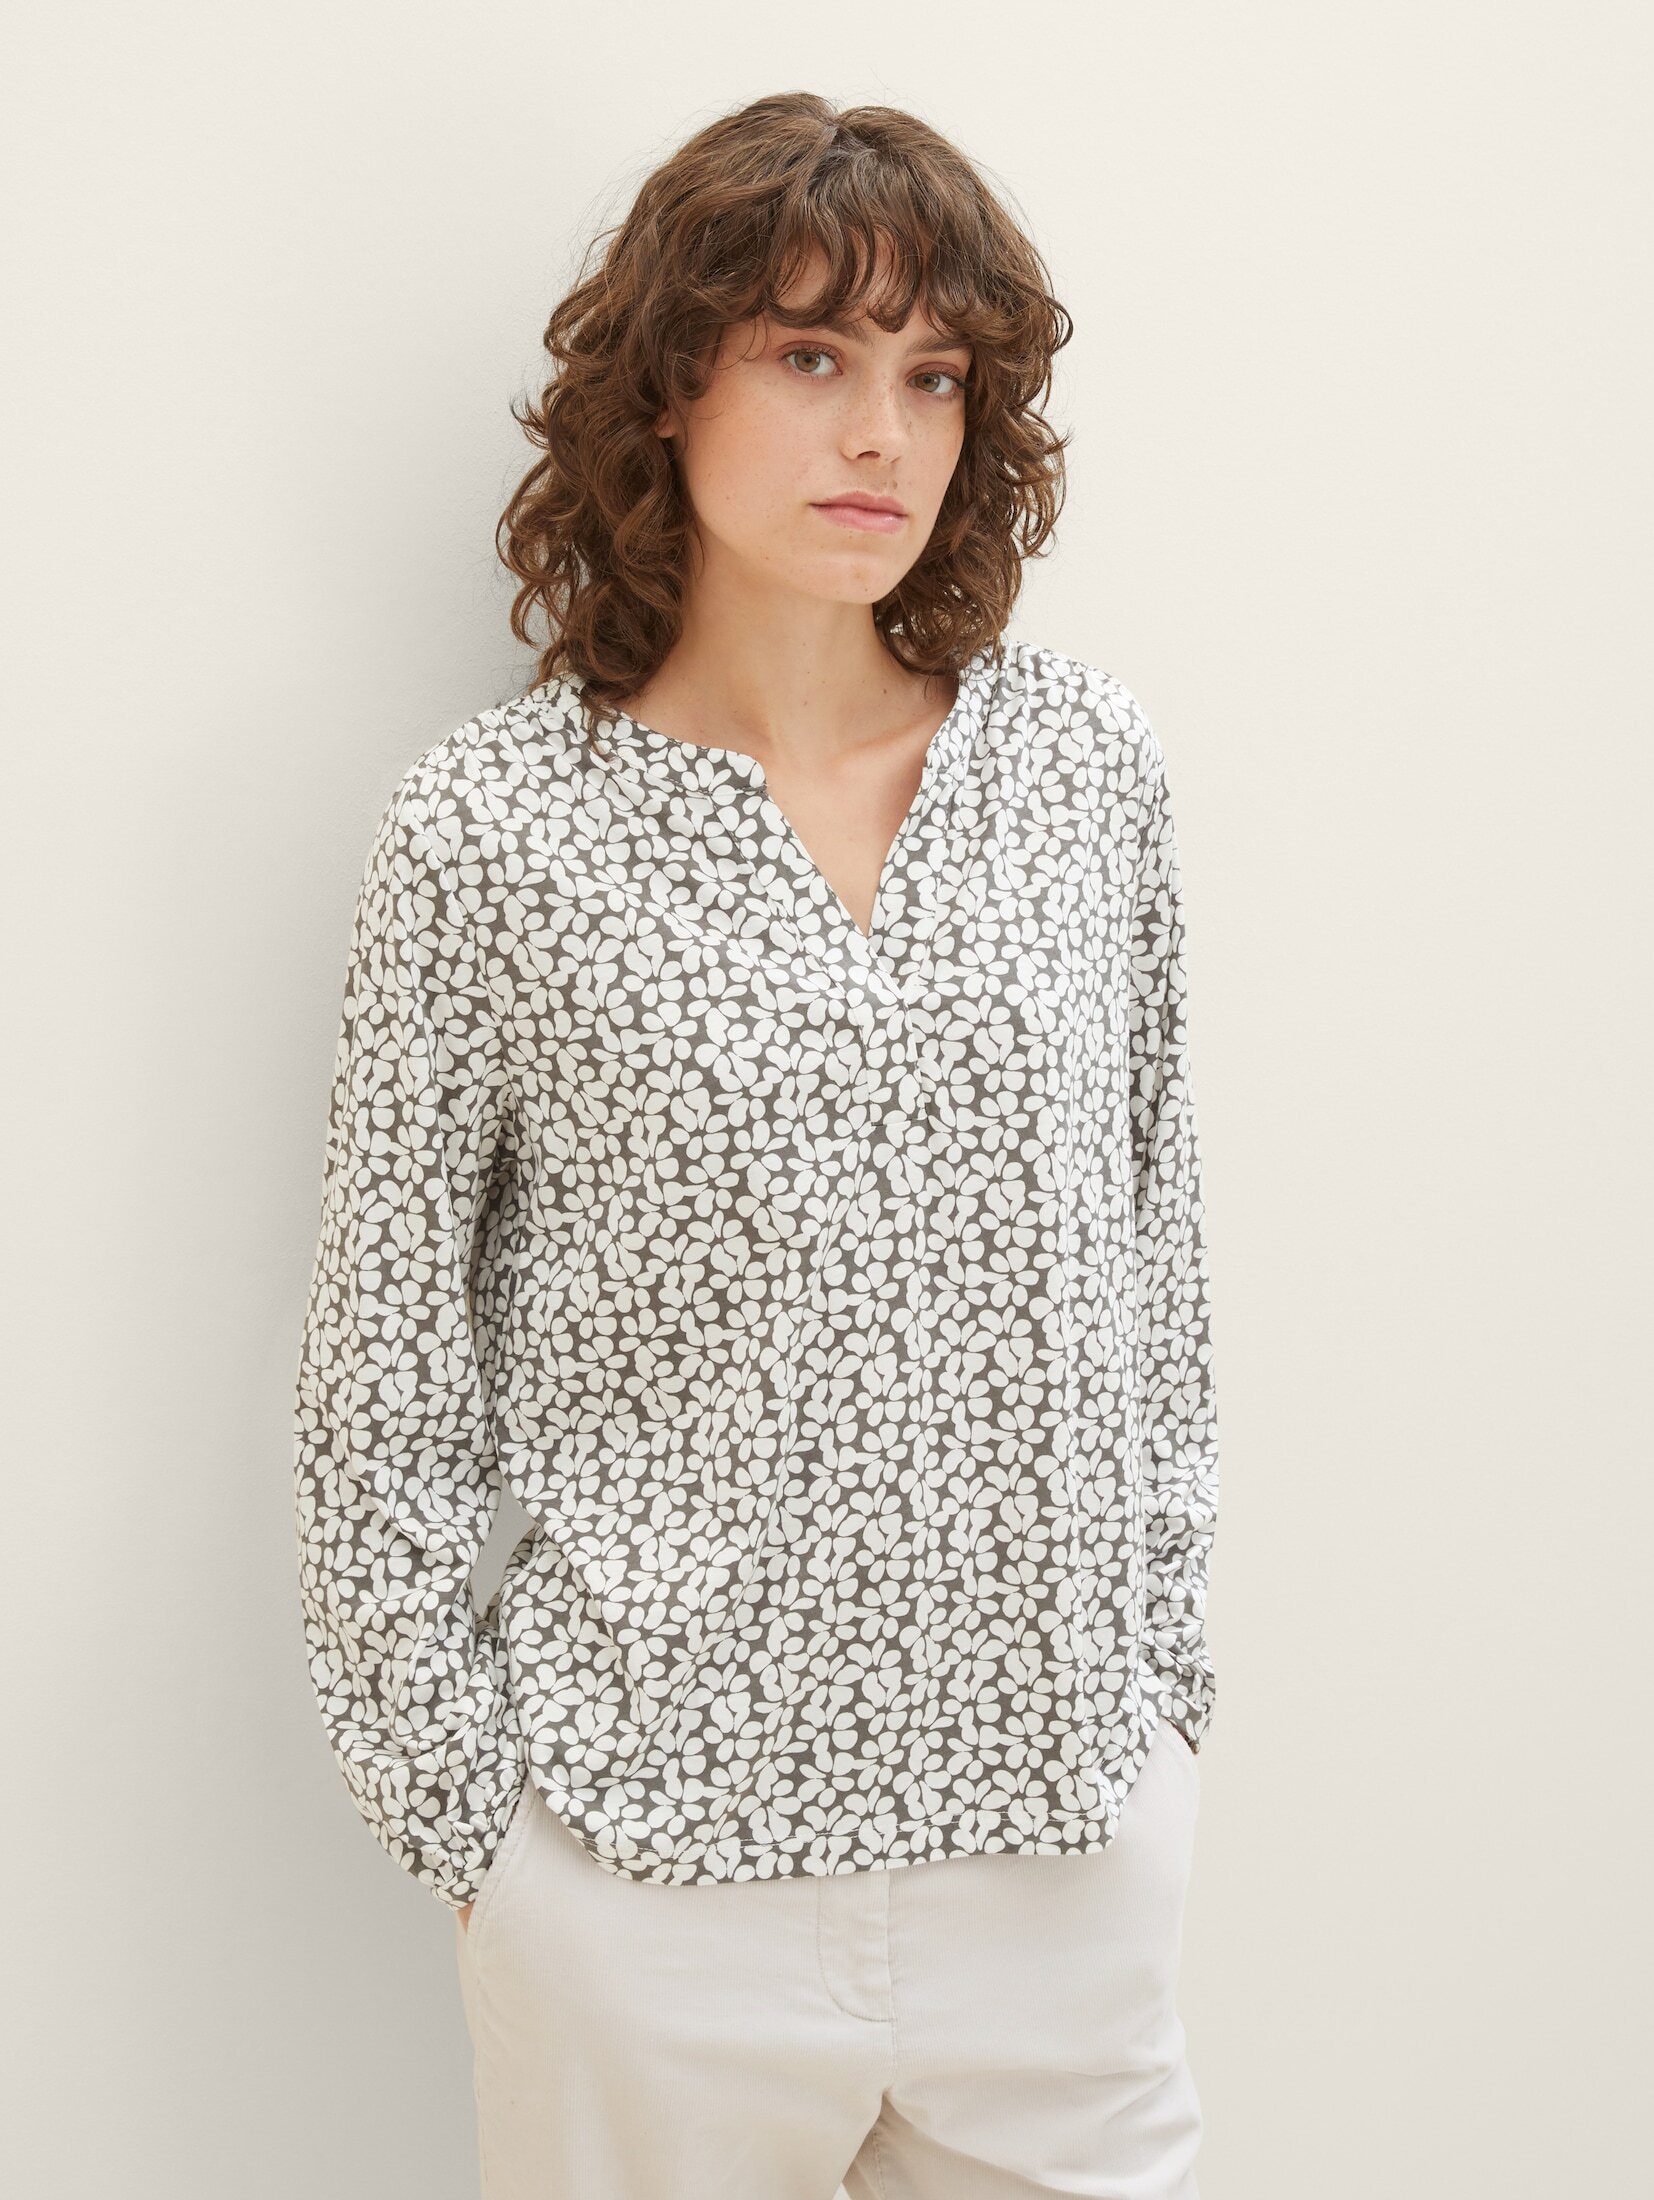 TOM TAILOR T-Shirt mit Bluse grey design floral Allover-Print